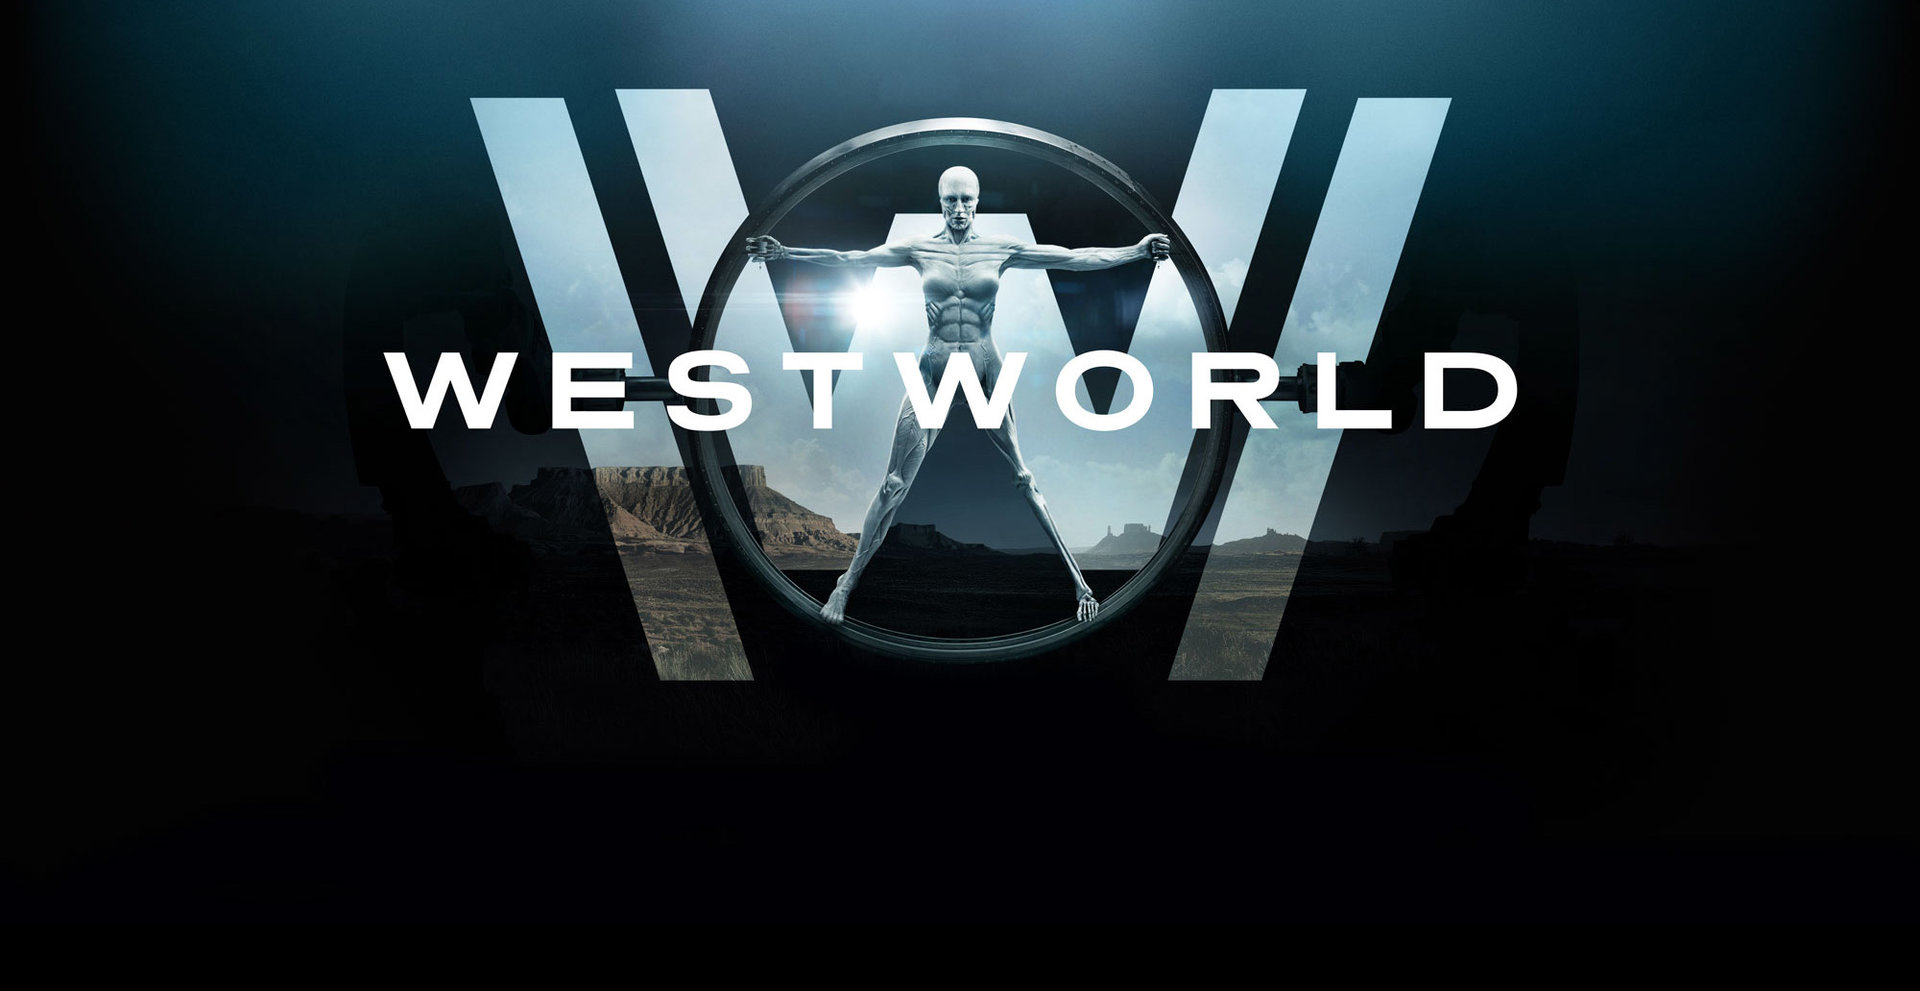 Μια φιλοσοφική προσέγγιση του Westworld